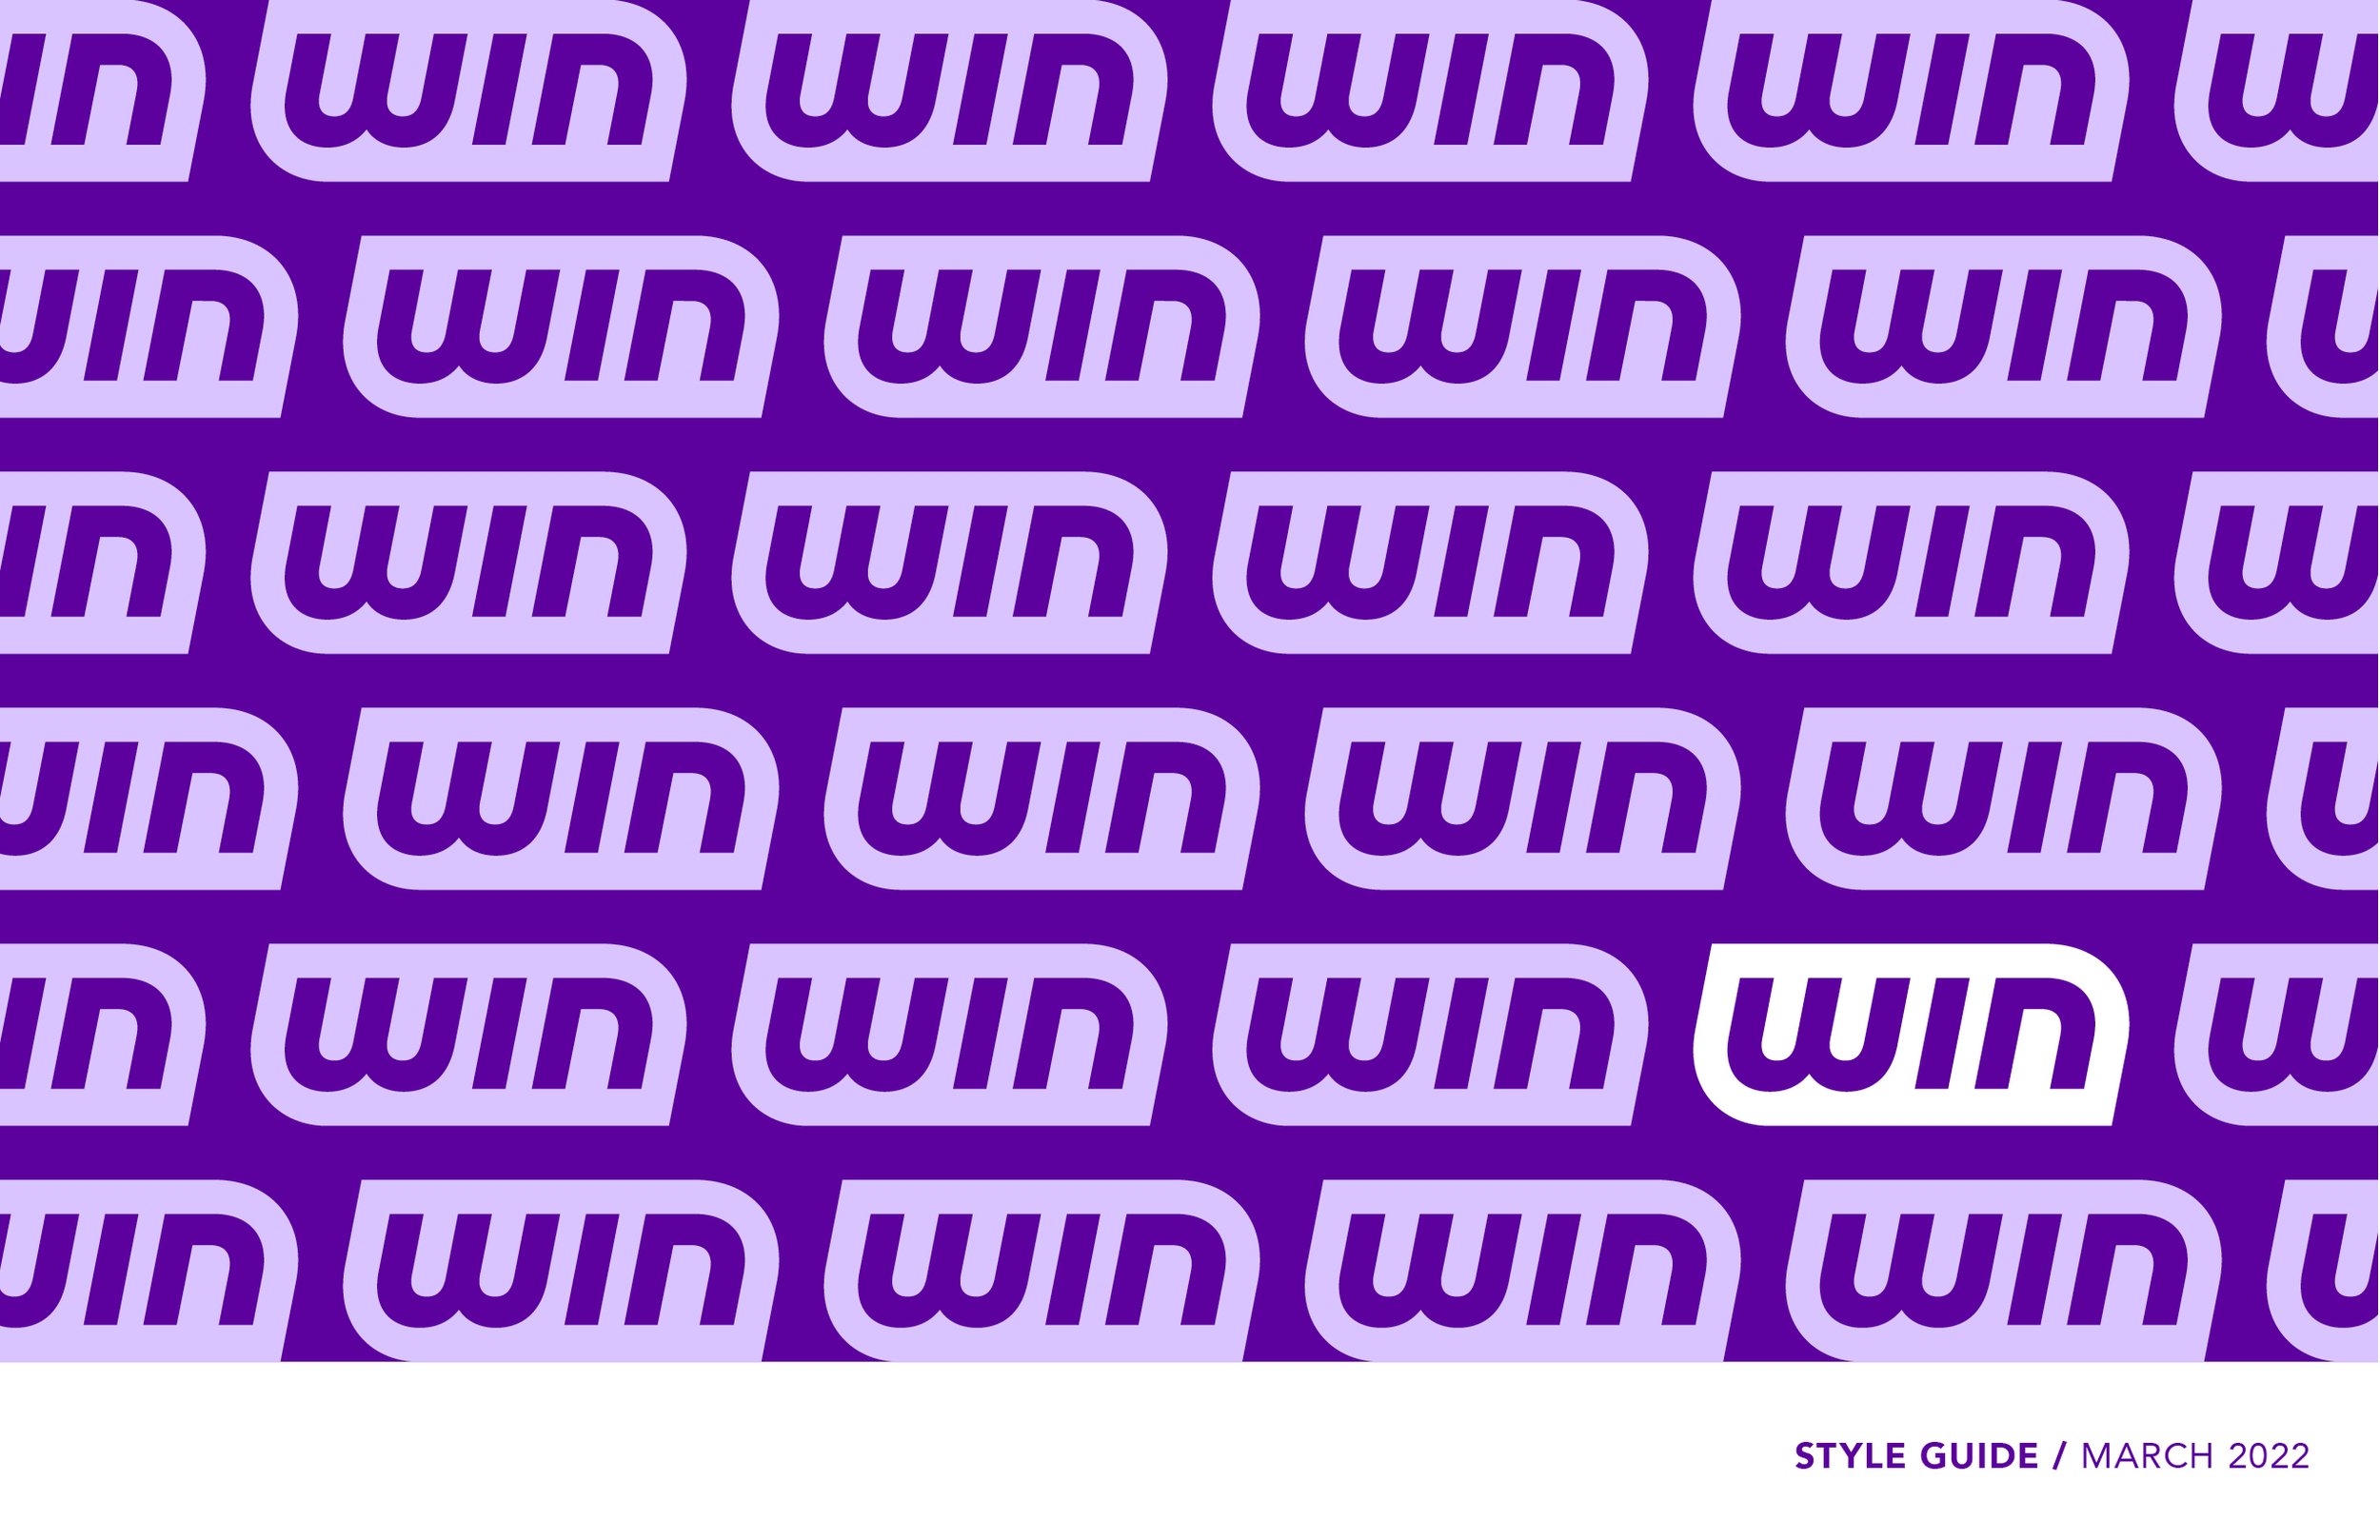 WIN_StyleGuide_Website_1.jpg